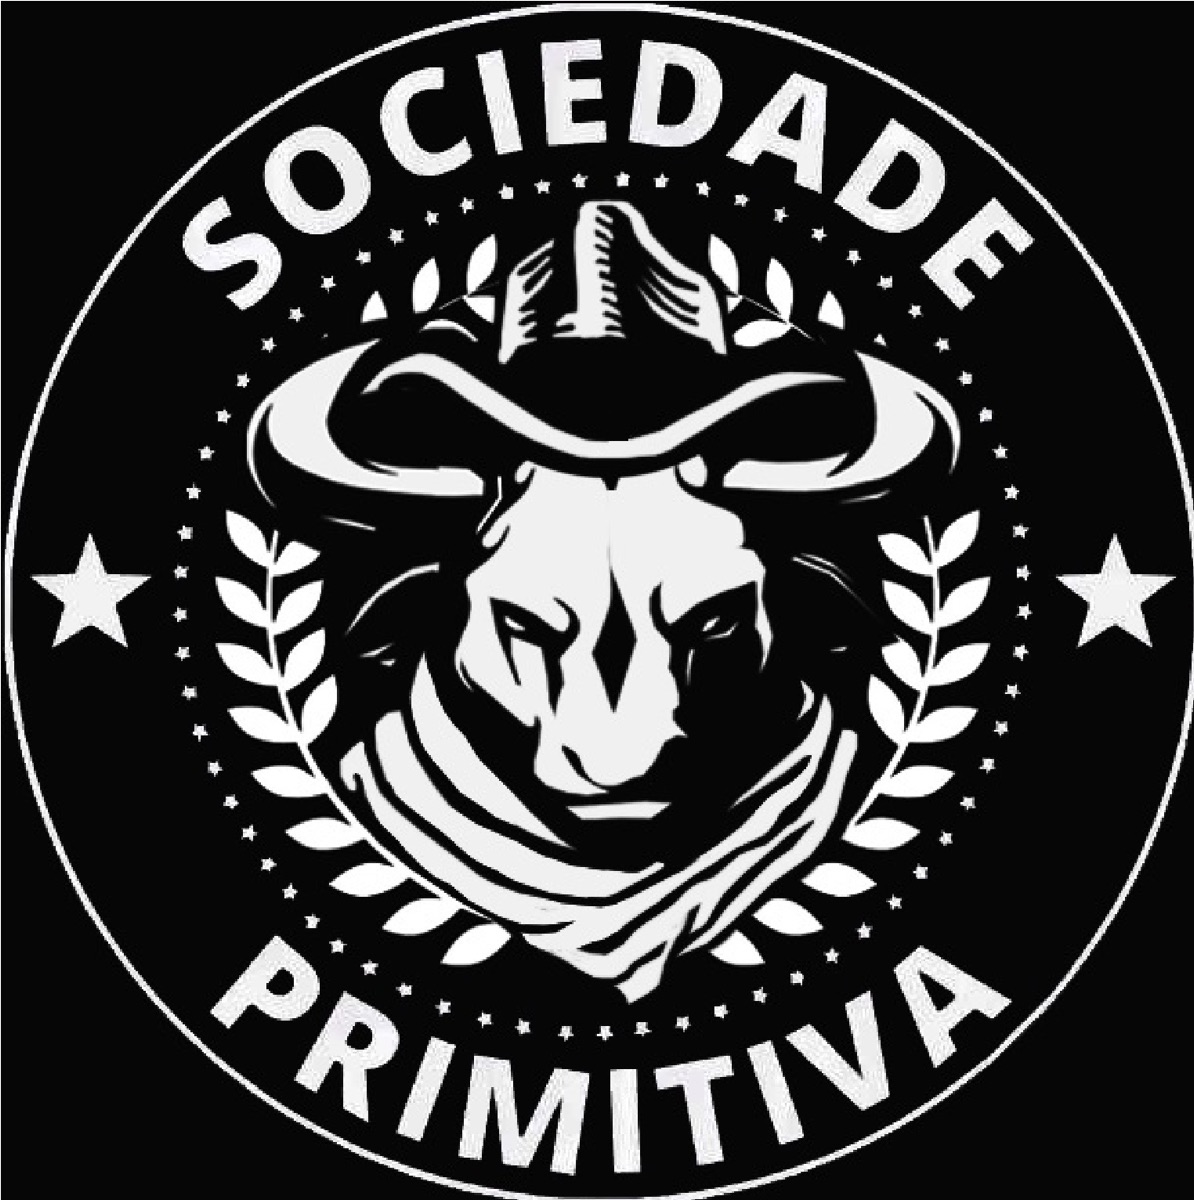 sociedade-primitiva-podcast-podtail